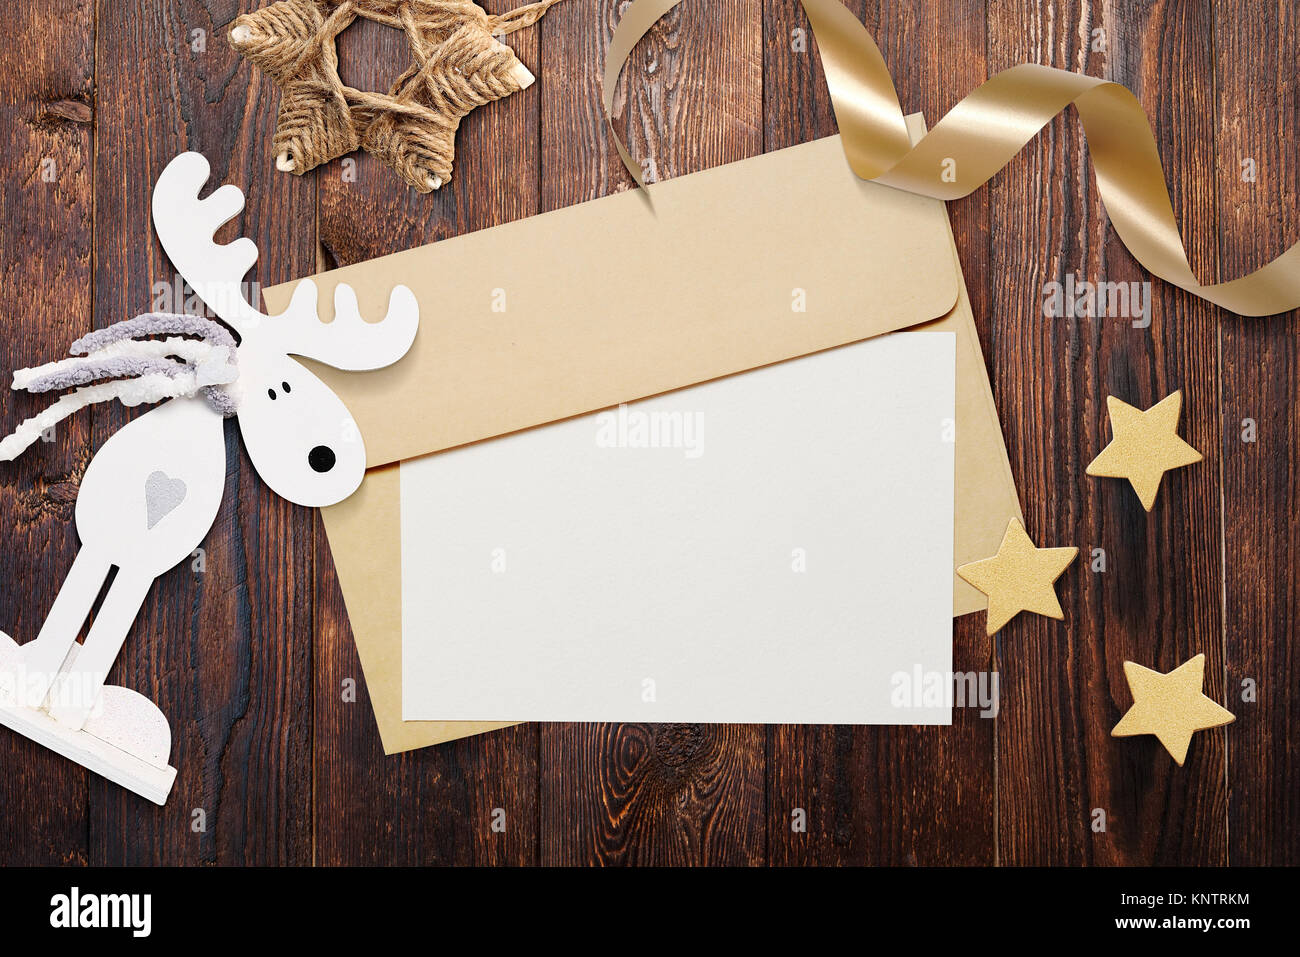 Weihnachten mockup Umschlag mit leerem Papier auf braunem Holz- Hintergrund. Brief an den Weihnachtsmann. Weihnachten Winter Einstellung - Sterne, Elche, Farbband Stockfoto